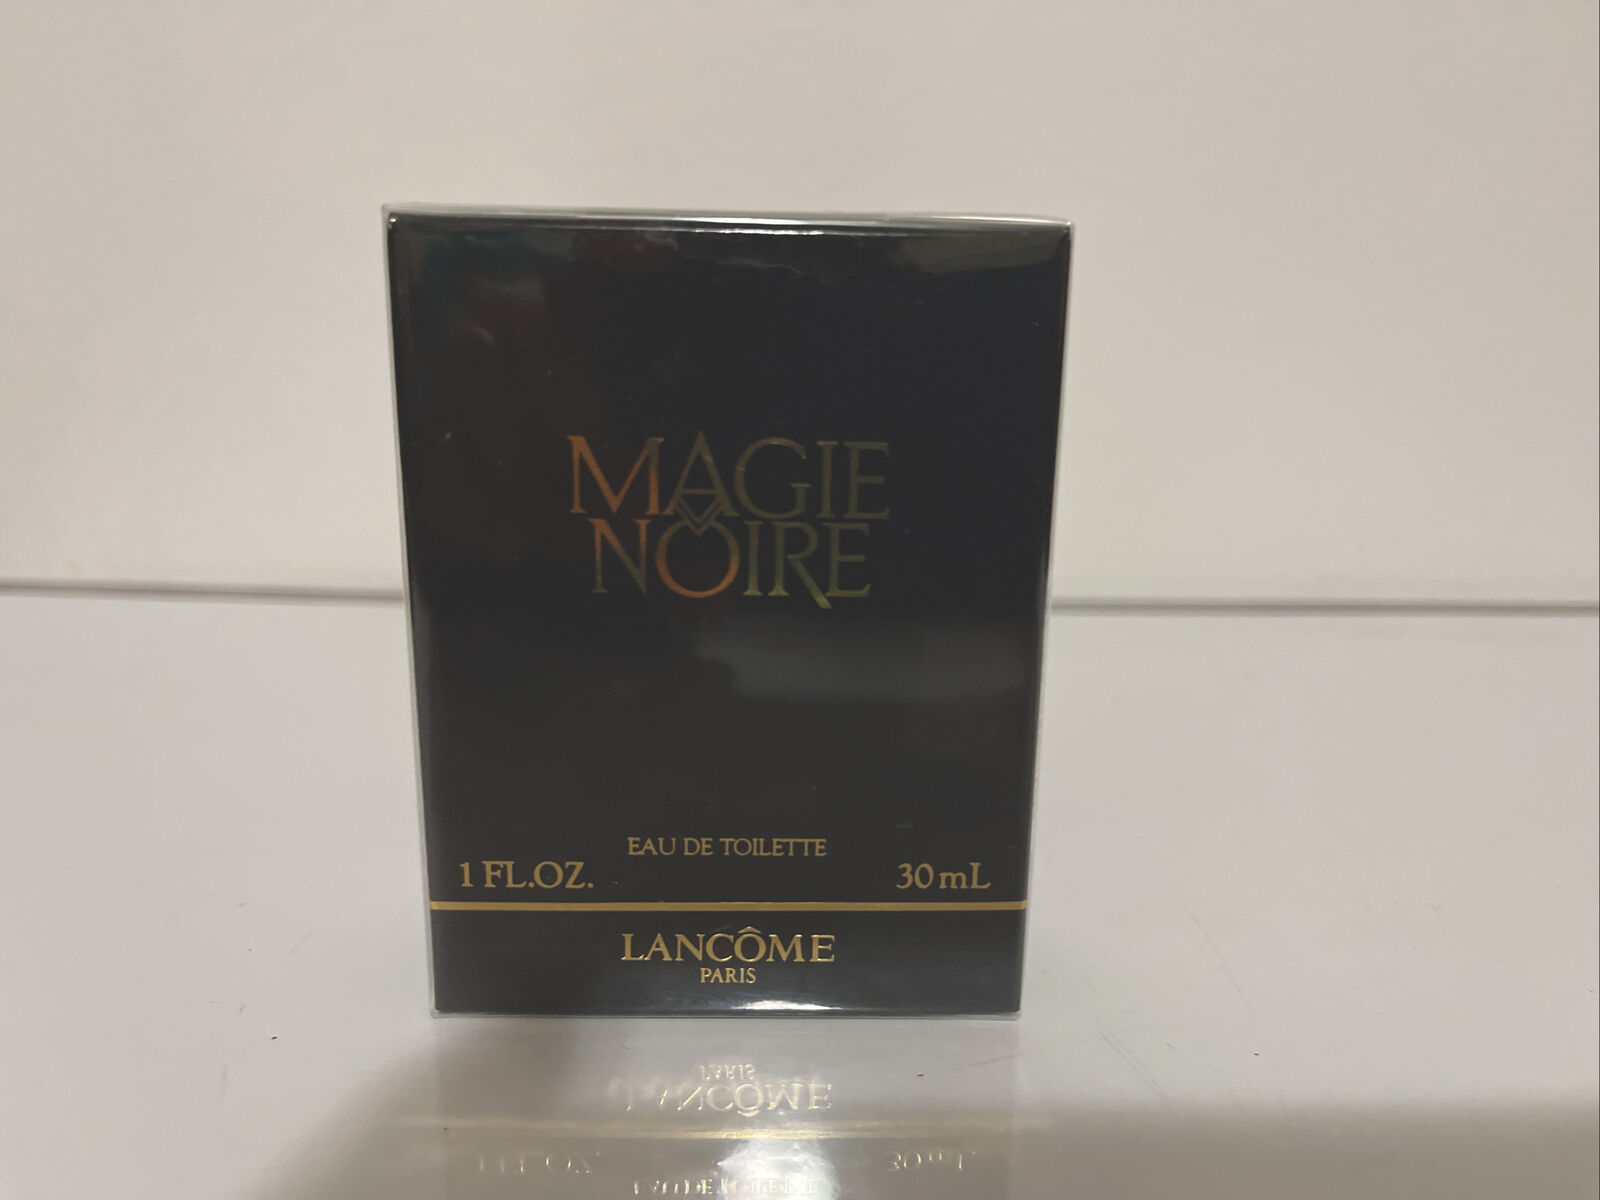 Magie Noire Lancome 1.0 cheap oz 30ml List price Toilette Old SPLASH Eau De Form